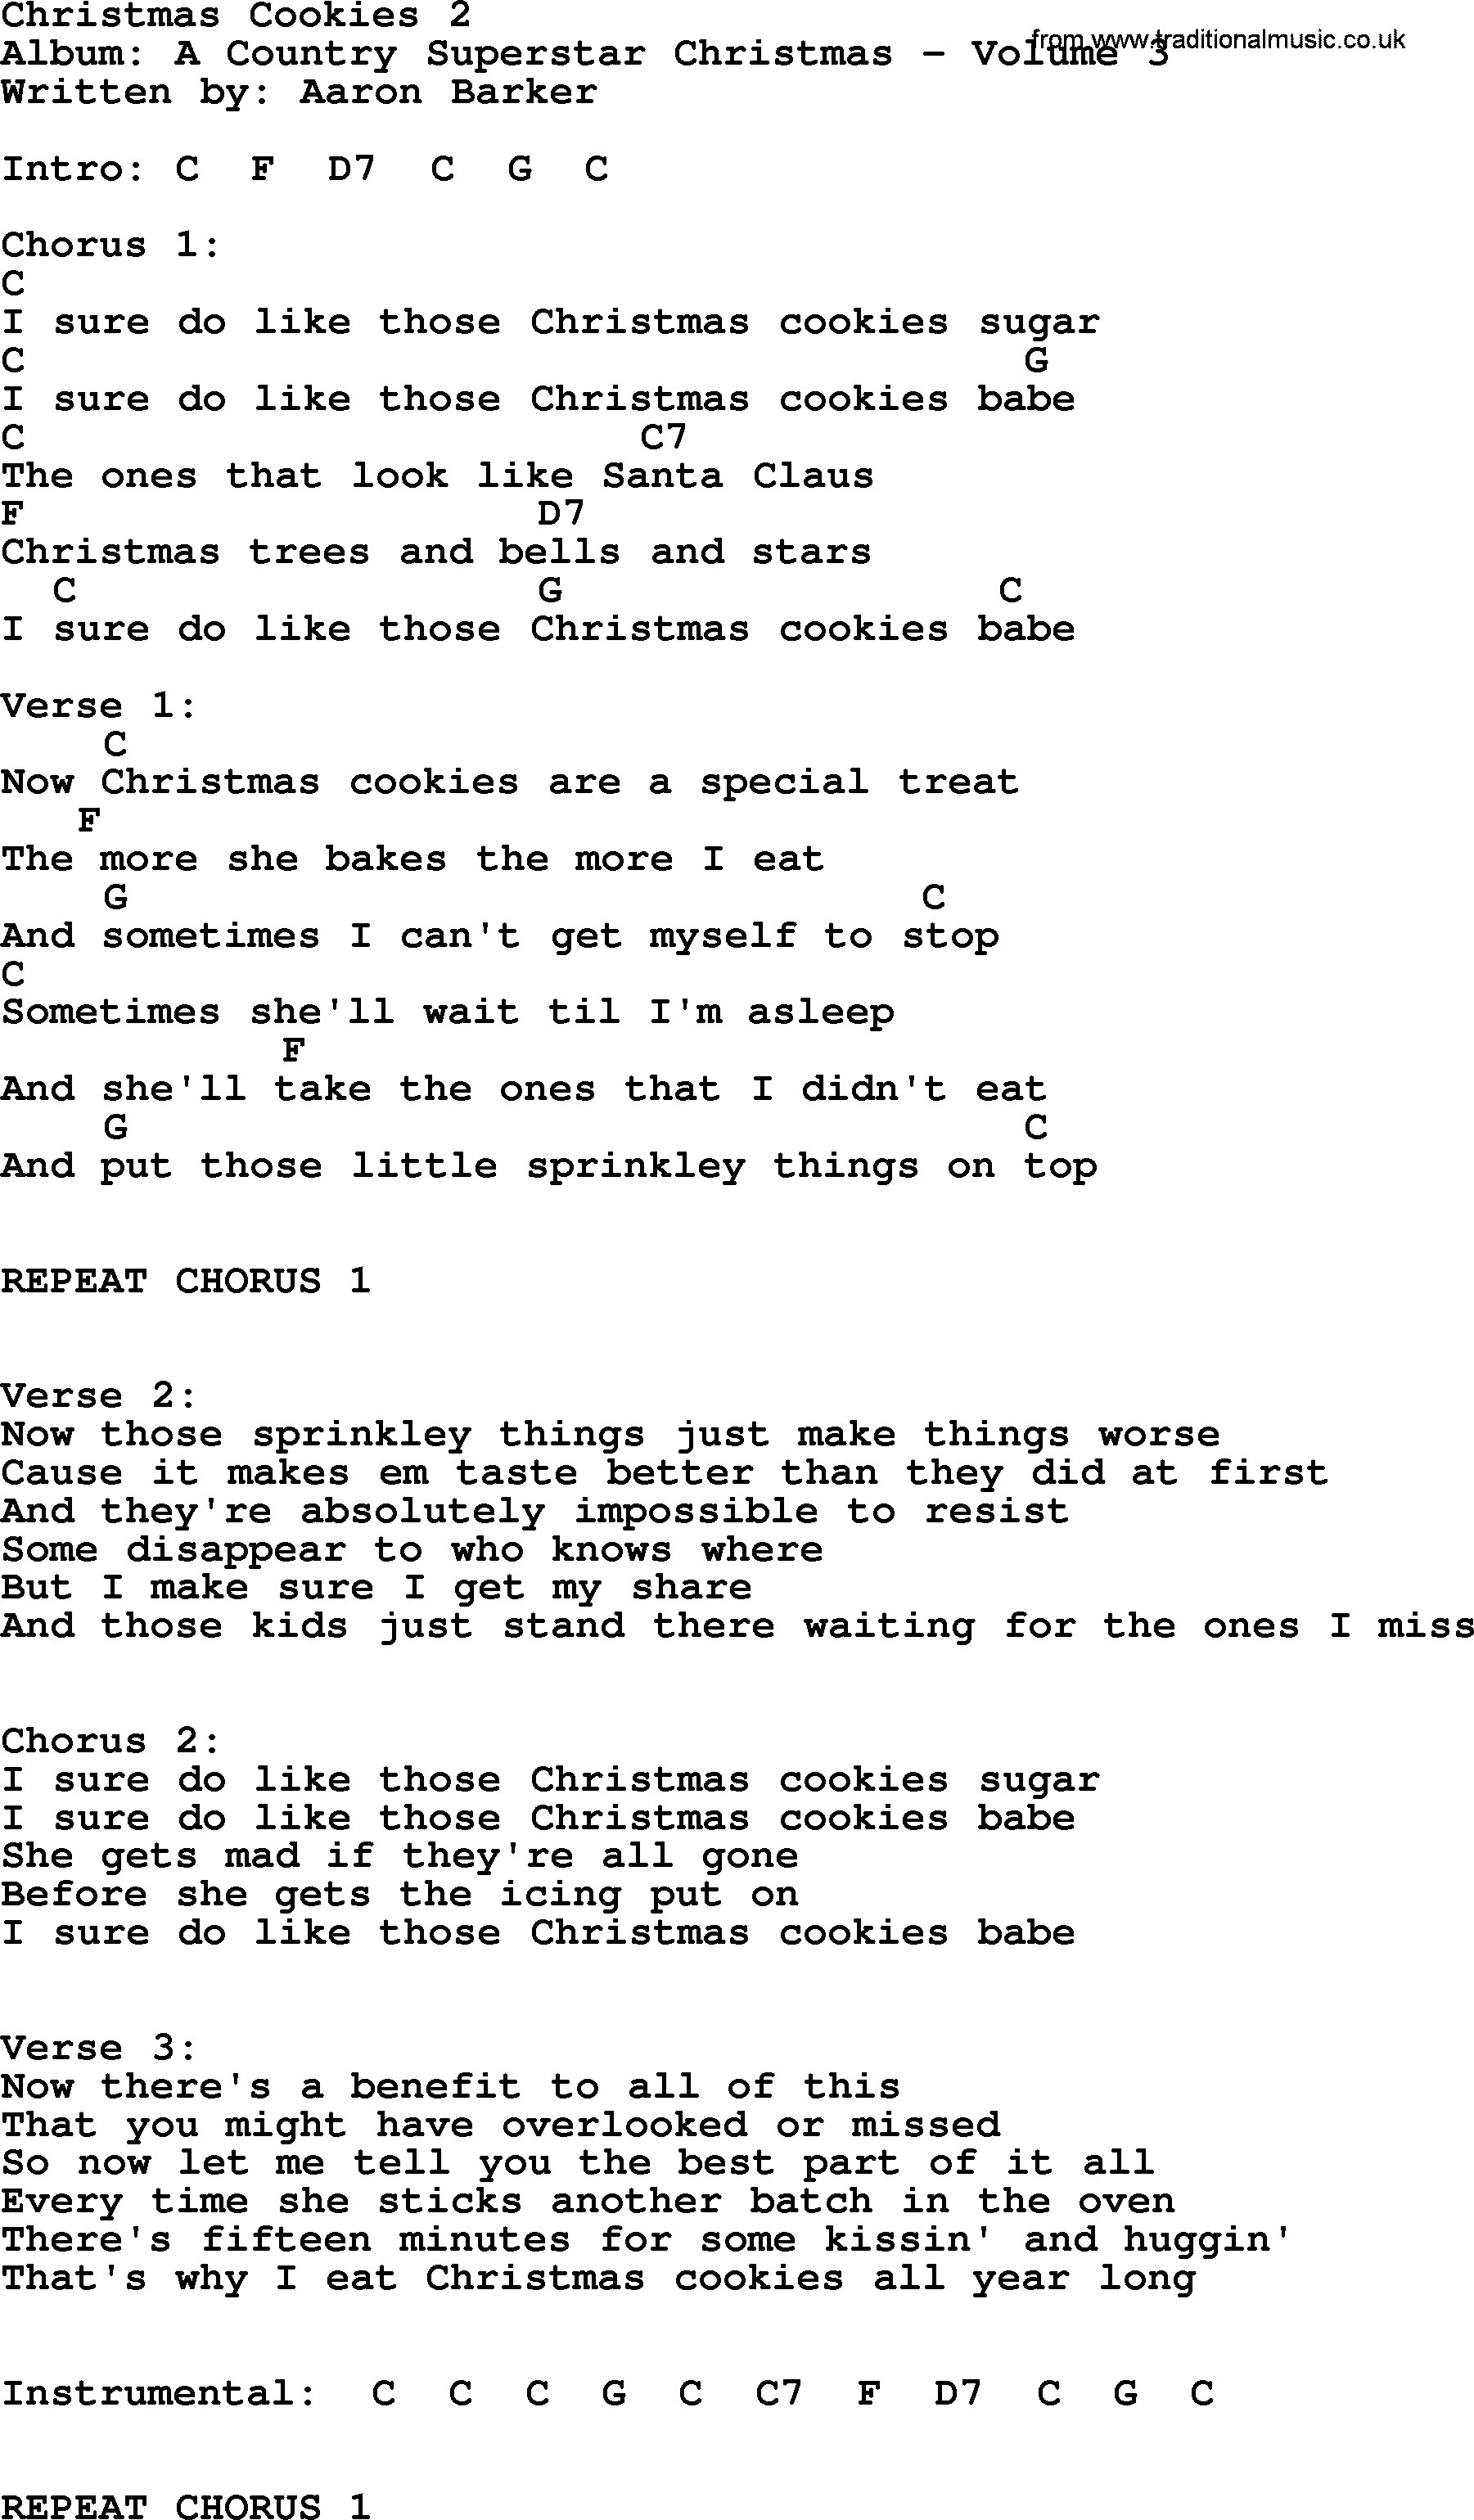 George Strait Christmas Cookies Lyrics
 Christmas Cookies 2 by George Strait lyrics and chords